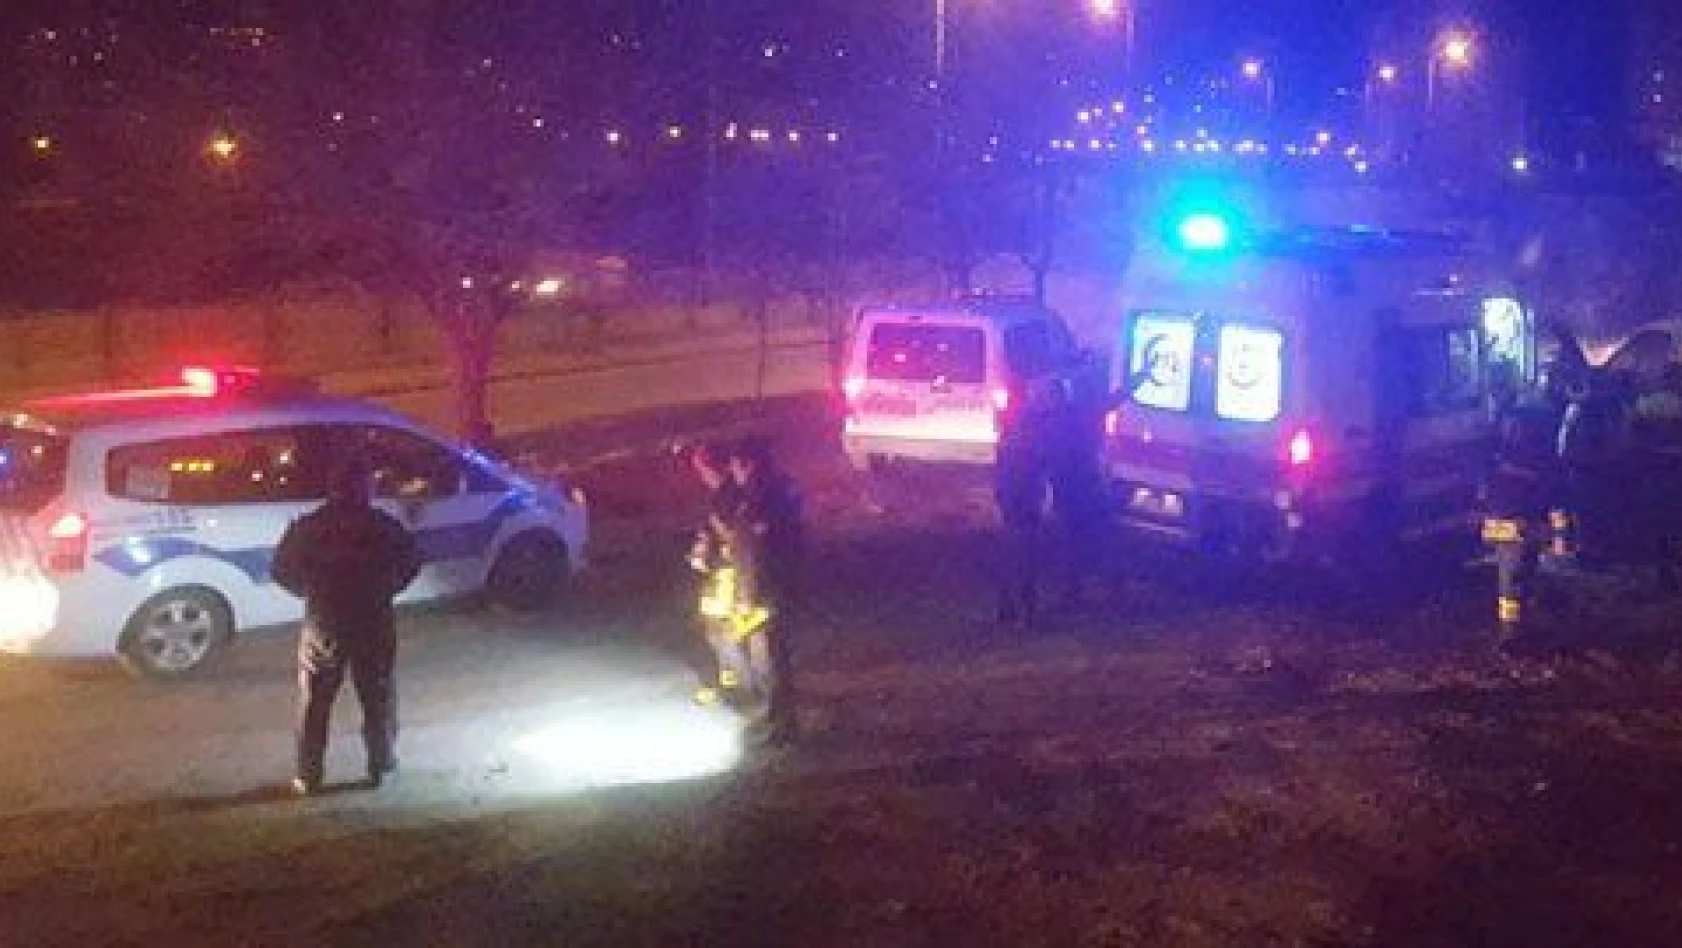 Sarız'da trafik kazası: 7 yaralı 